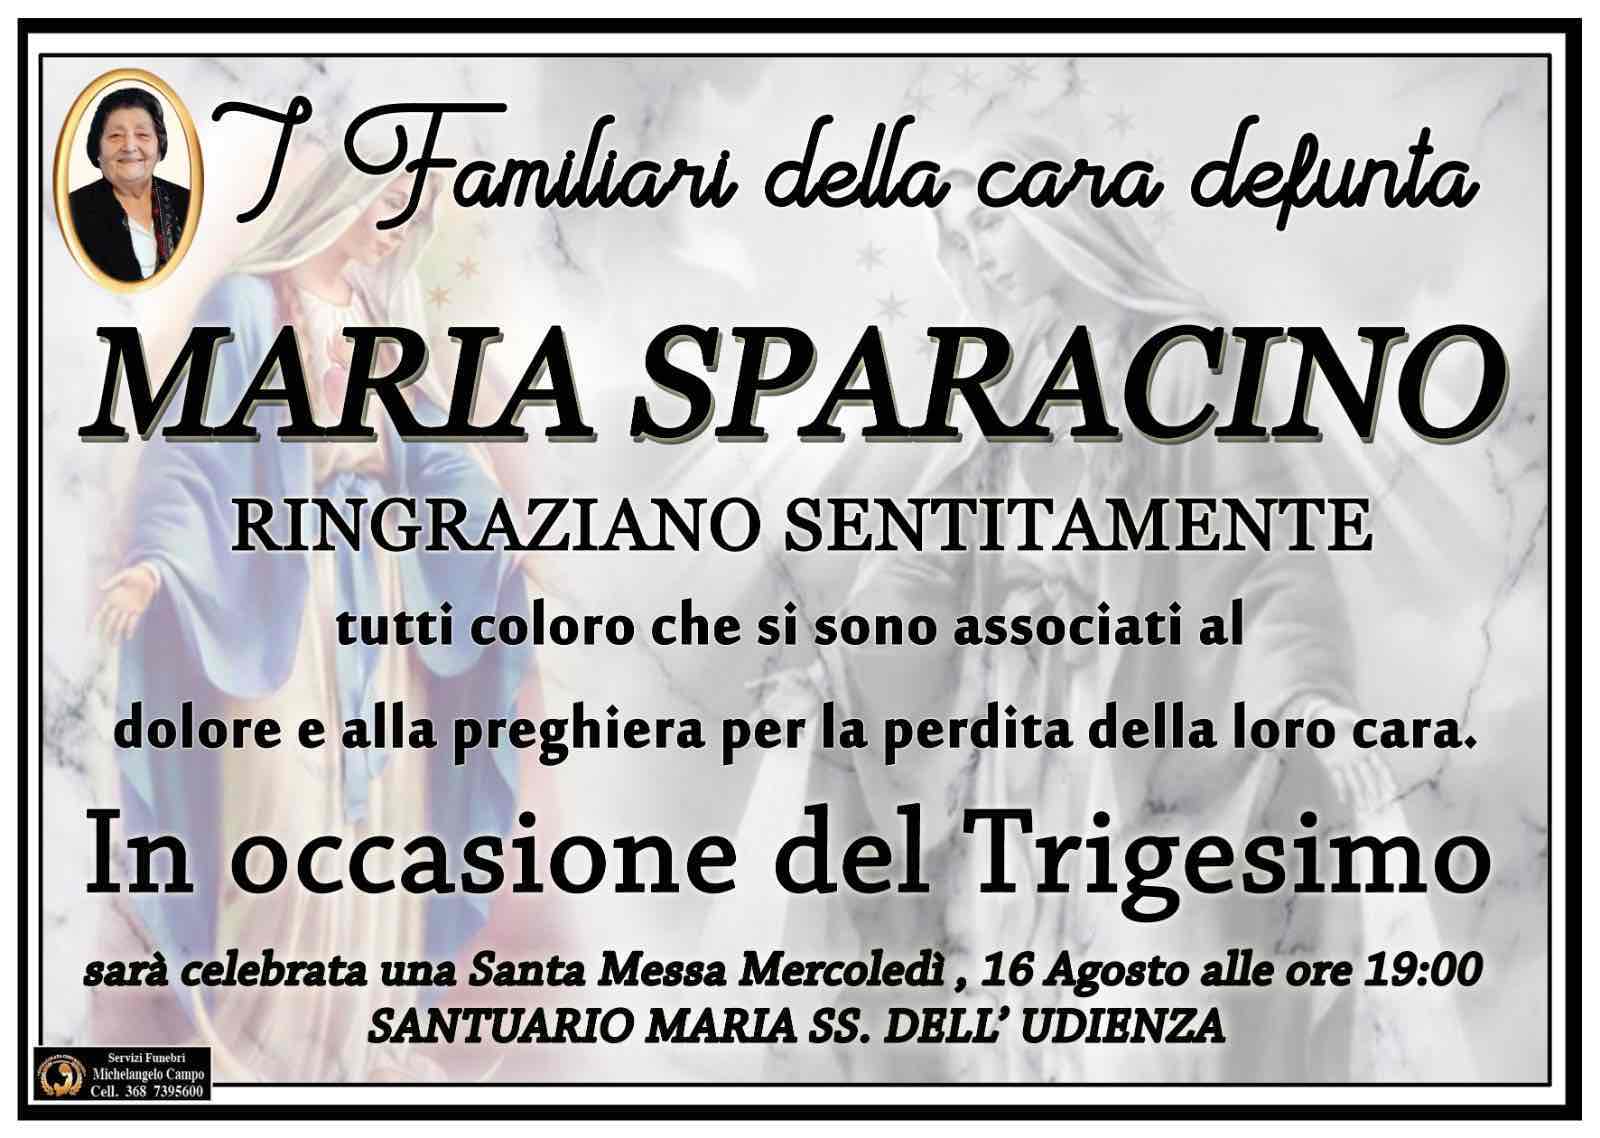 Maria Sparacino